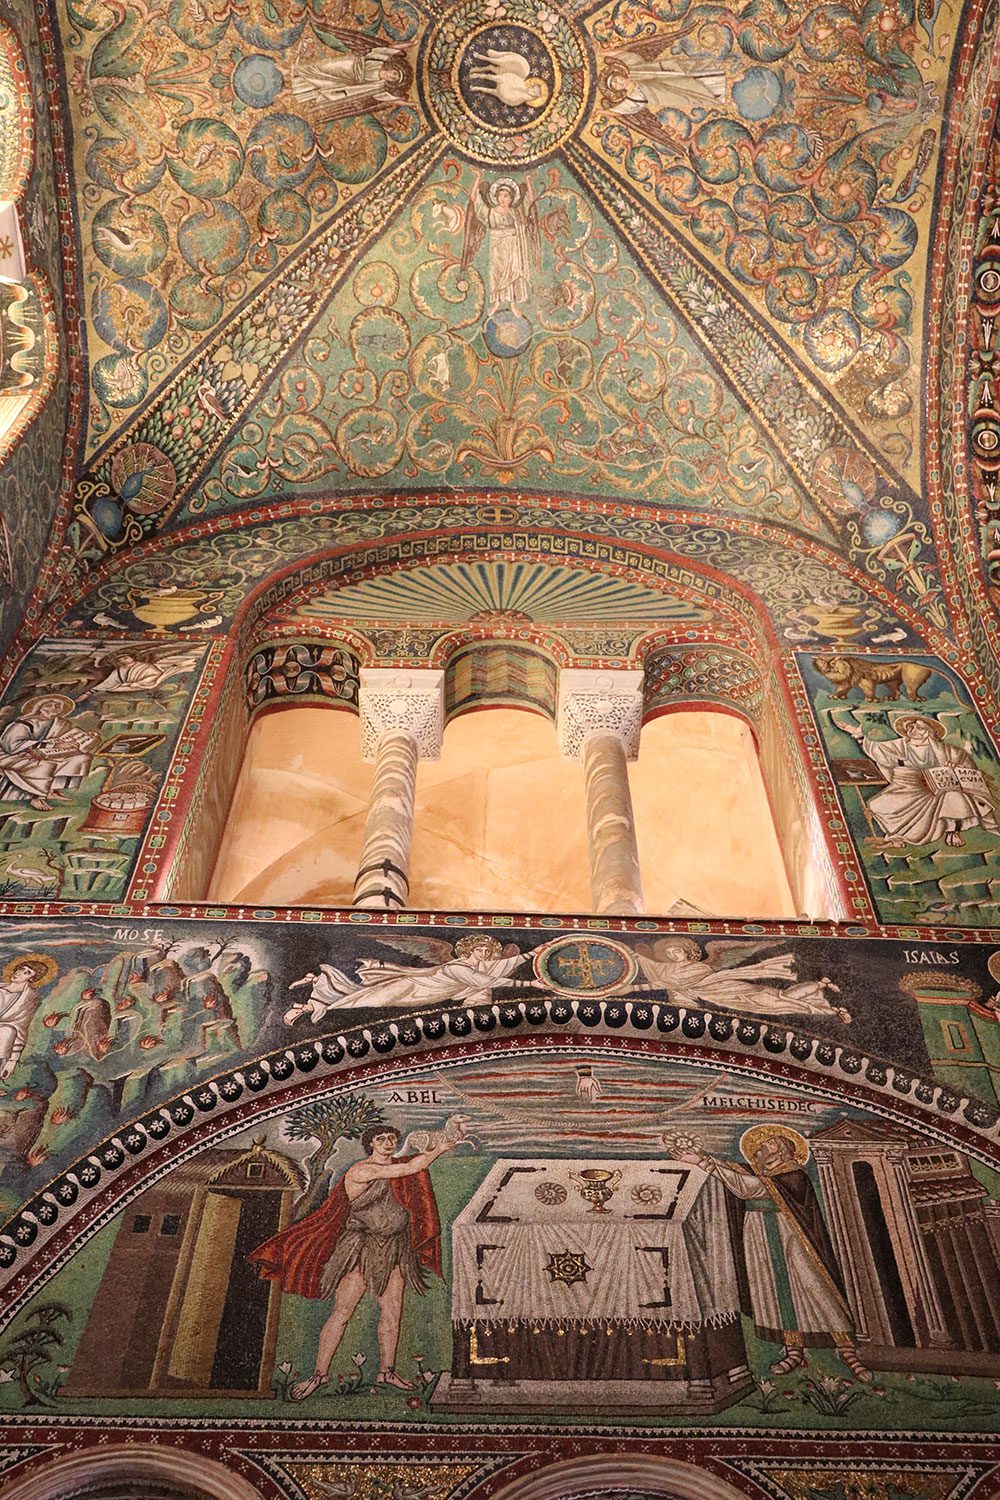 San Vitale, Ravenna